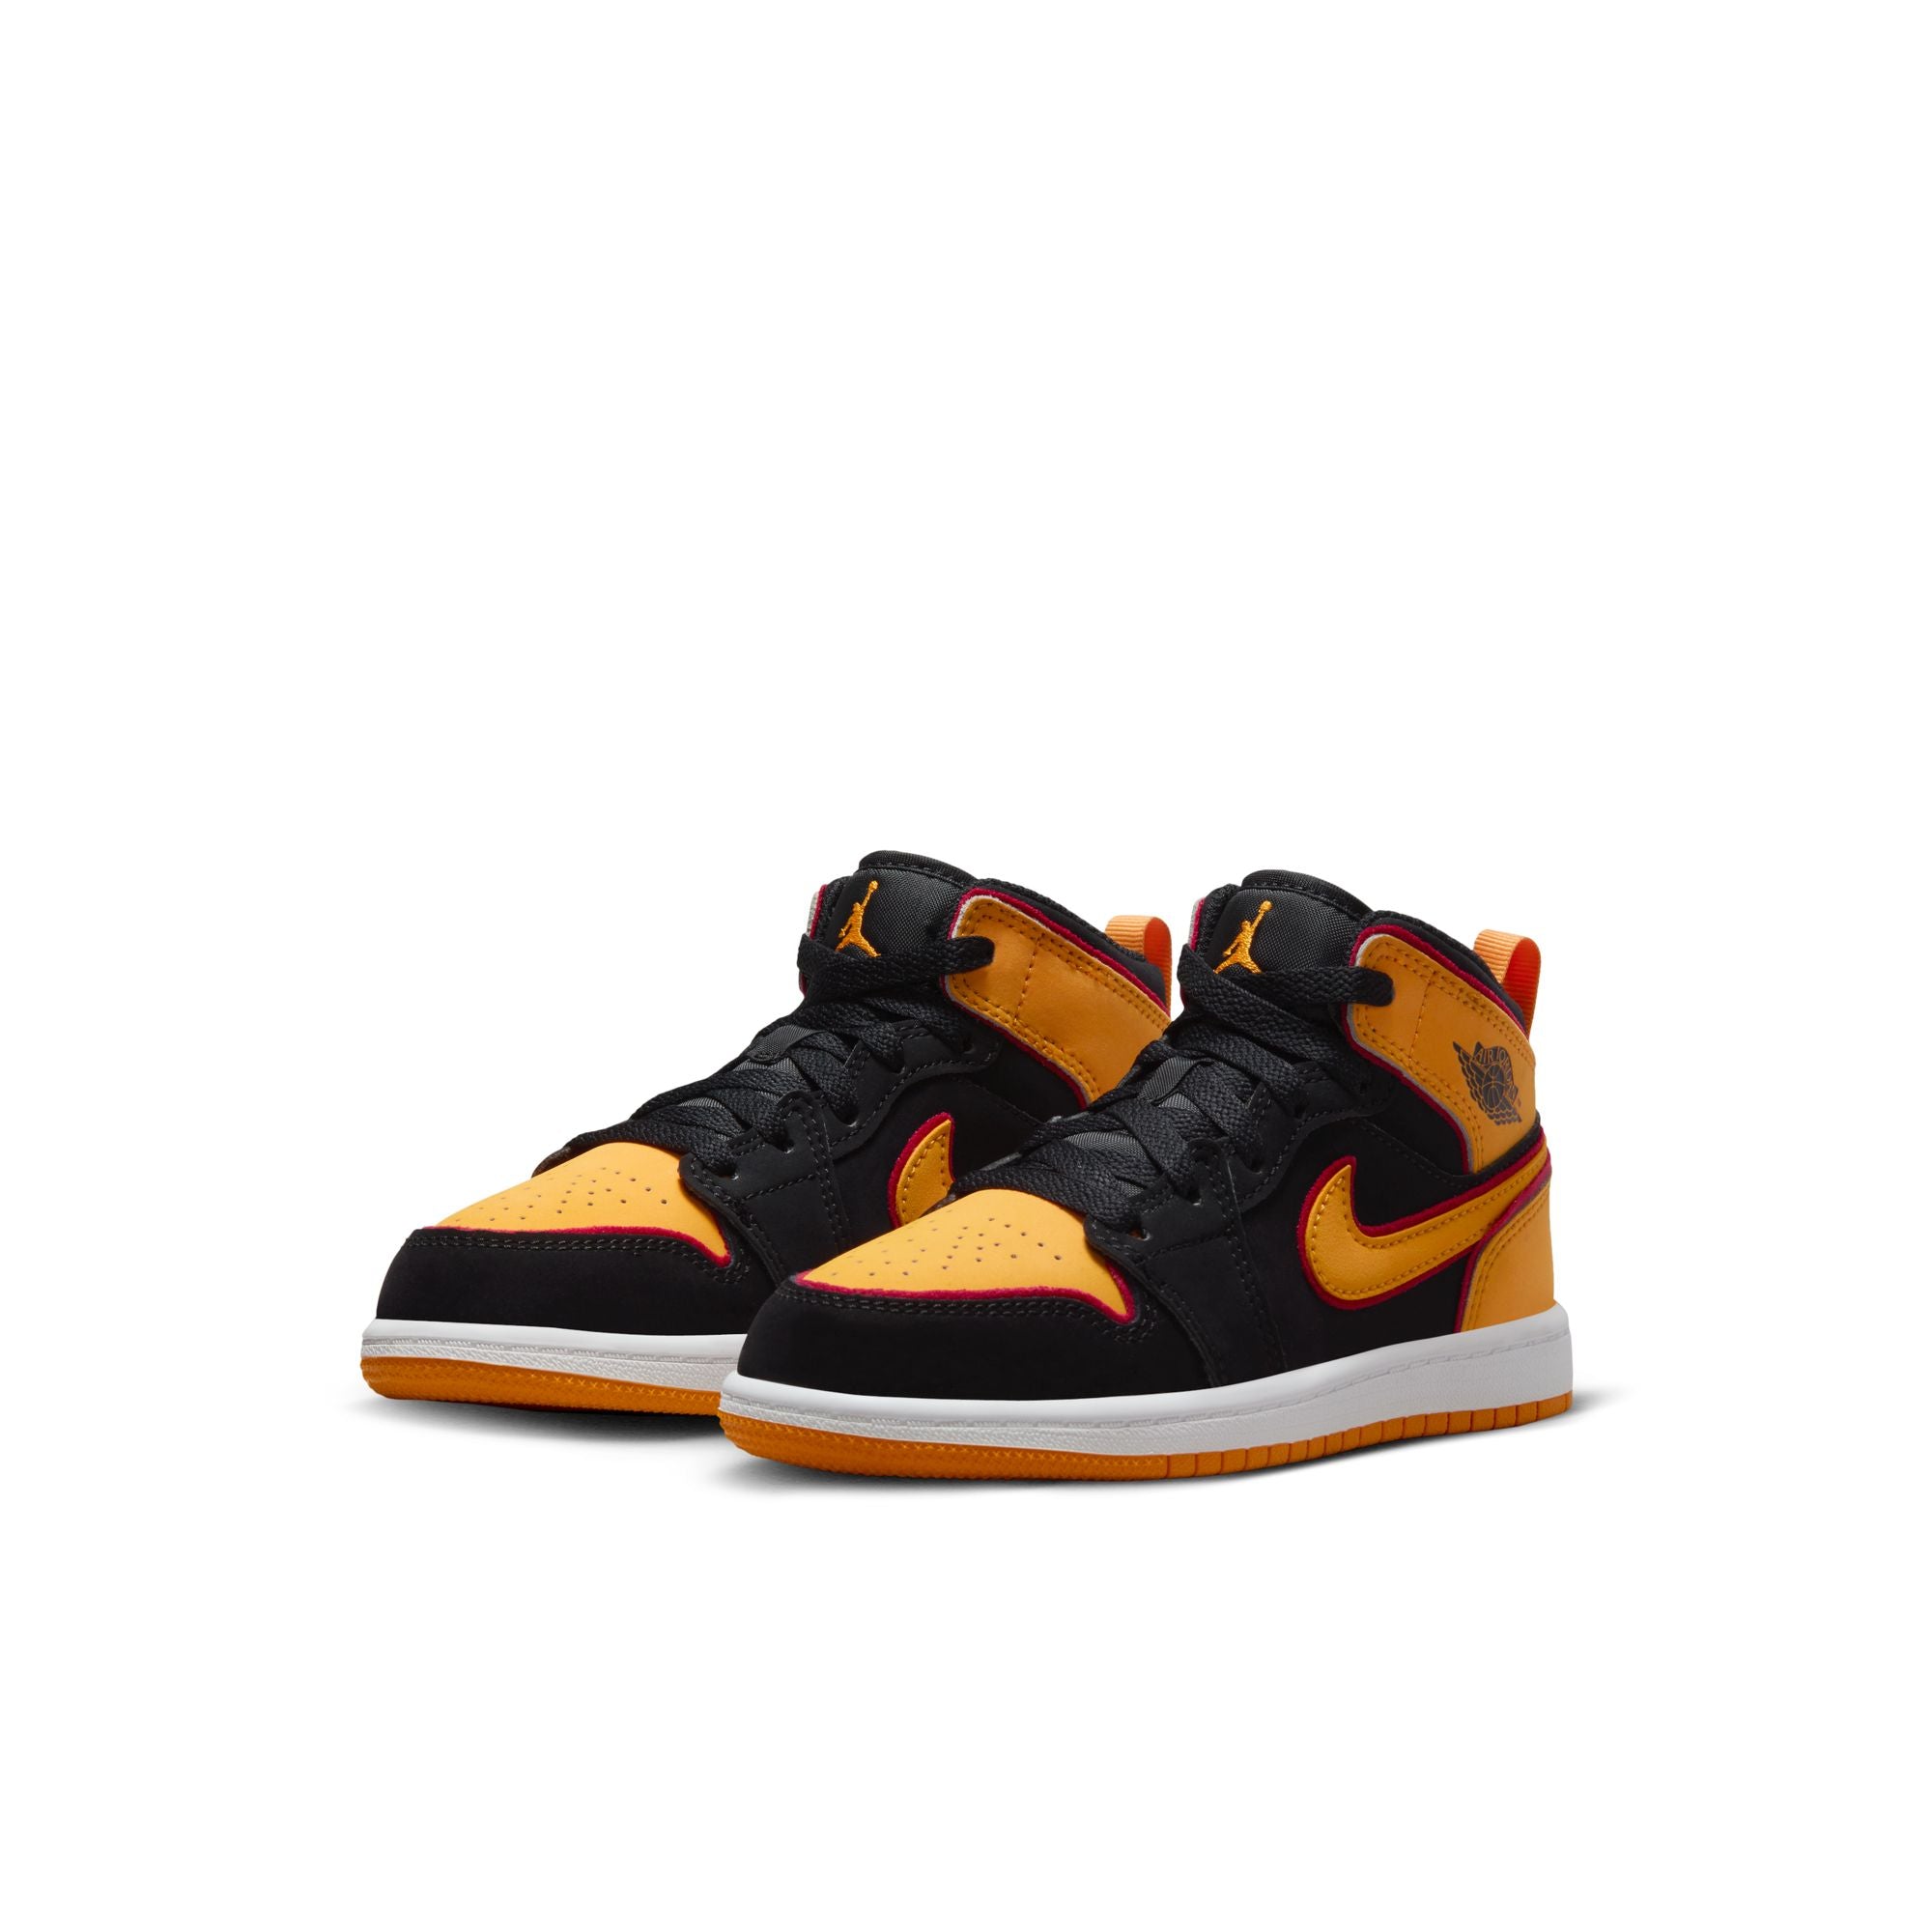 Nike Air Jordan 1 Mid sneakers in orange and black